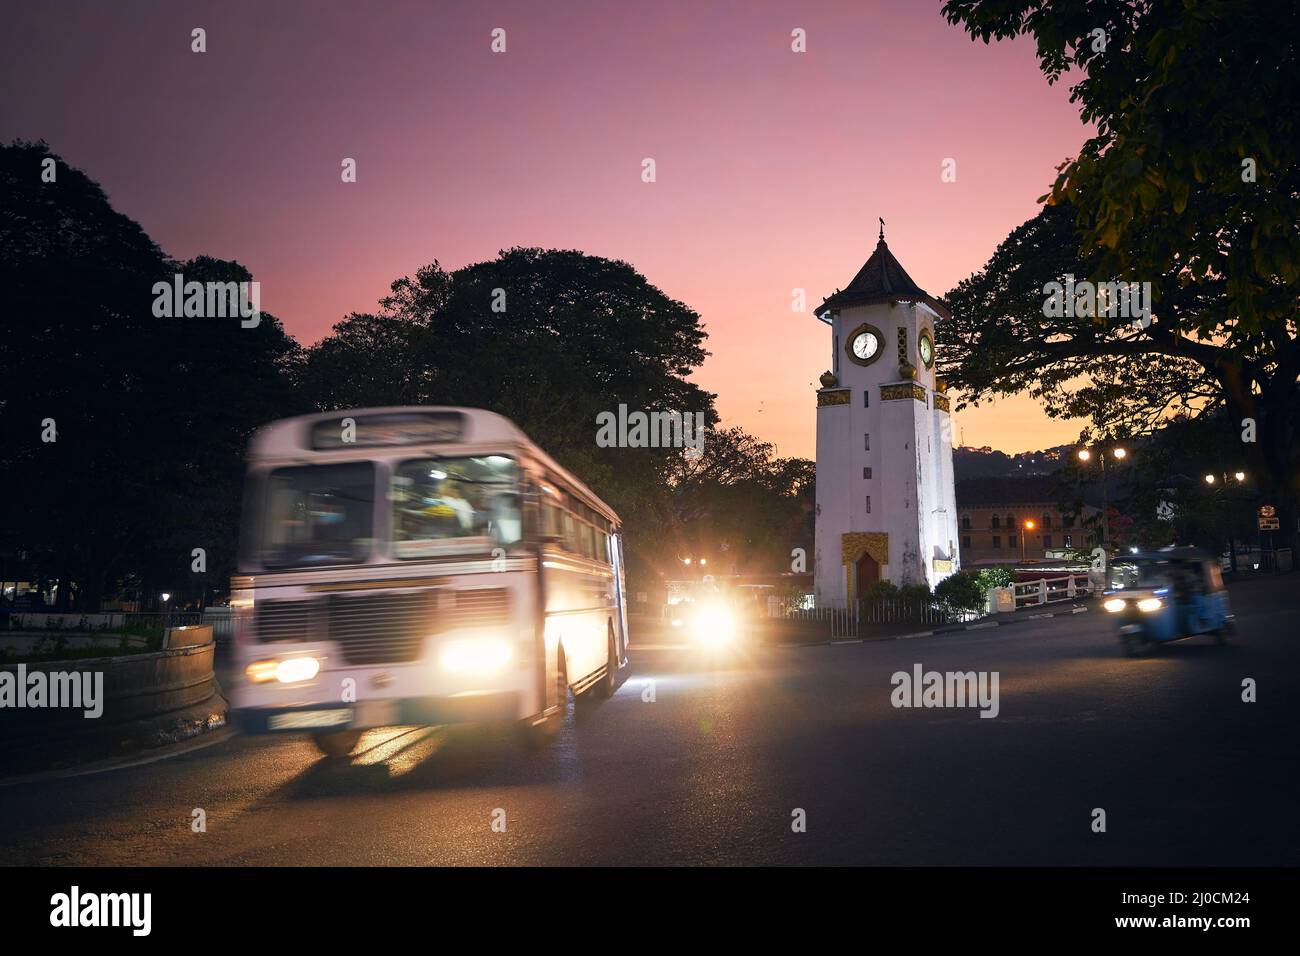 Autobús y tuk tuk en movimiento borroso en el cruce de caminos en la hermosa puesta de sol. Tráfico alrededor de la torre del reloj en la calle en Kandy, Sri Lanka. Foto de stock